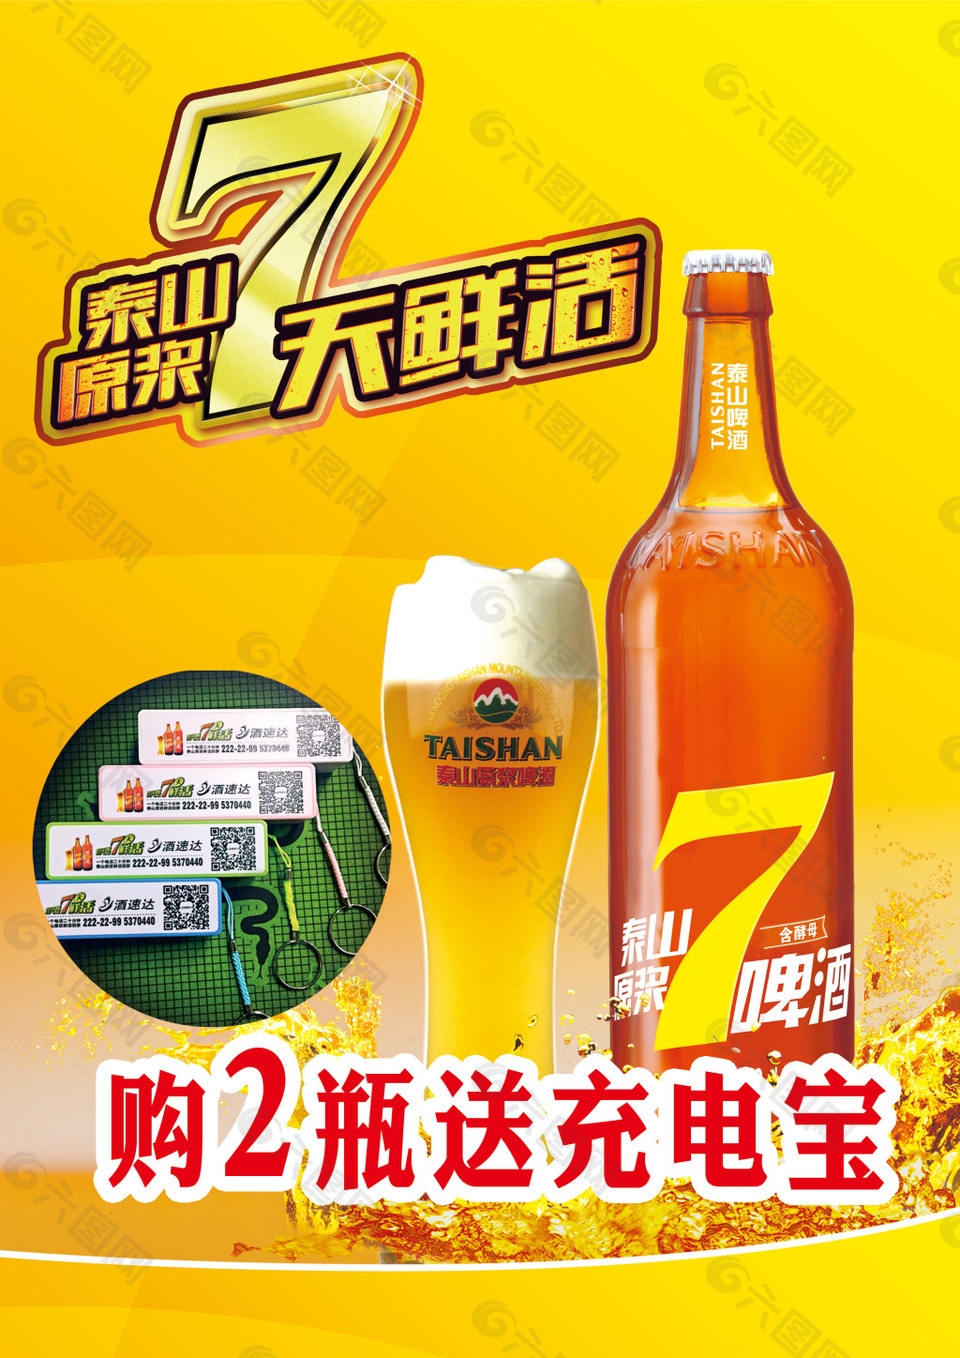 7天鲜活啤酒宣传海报